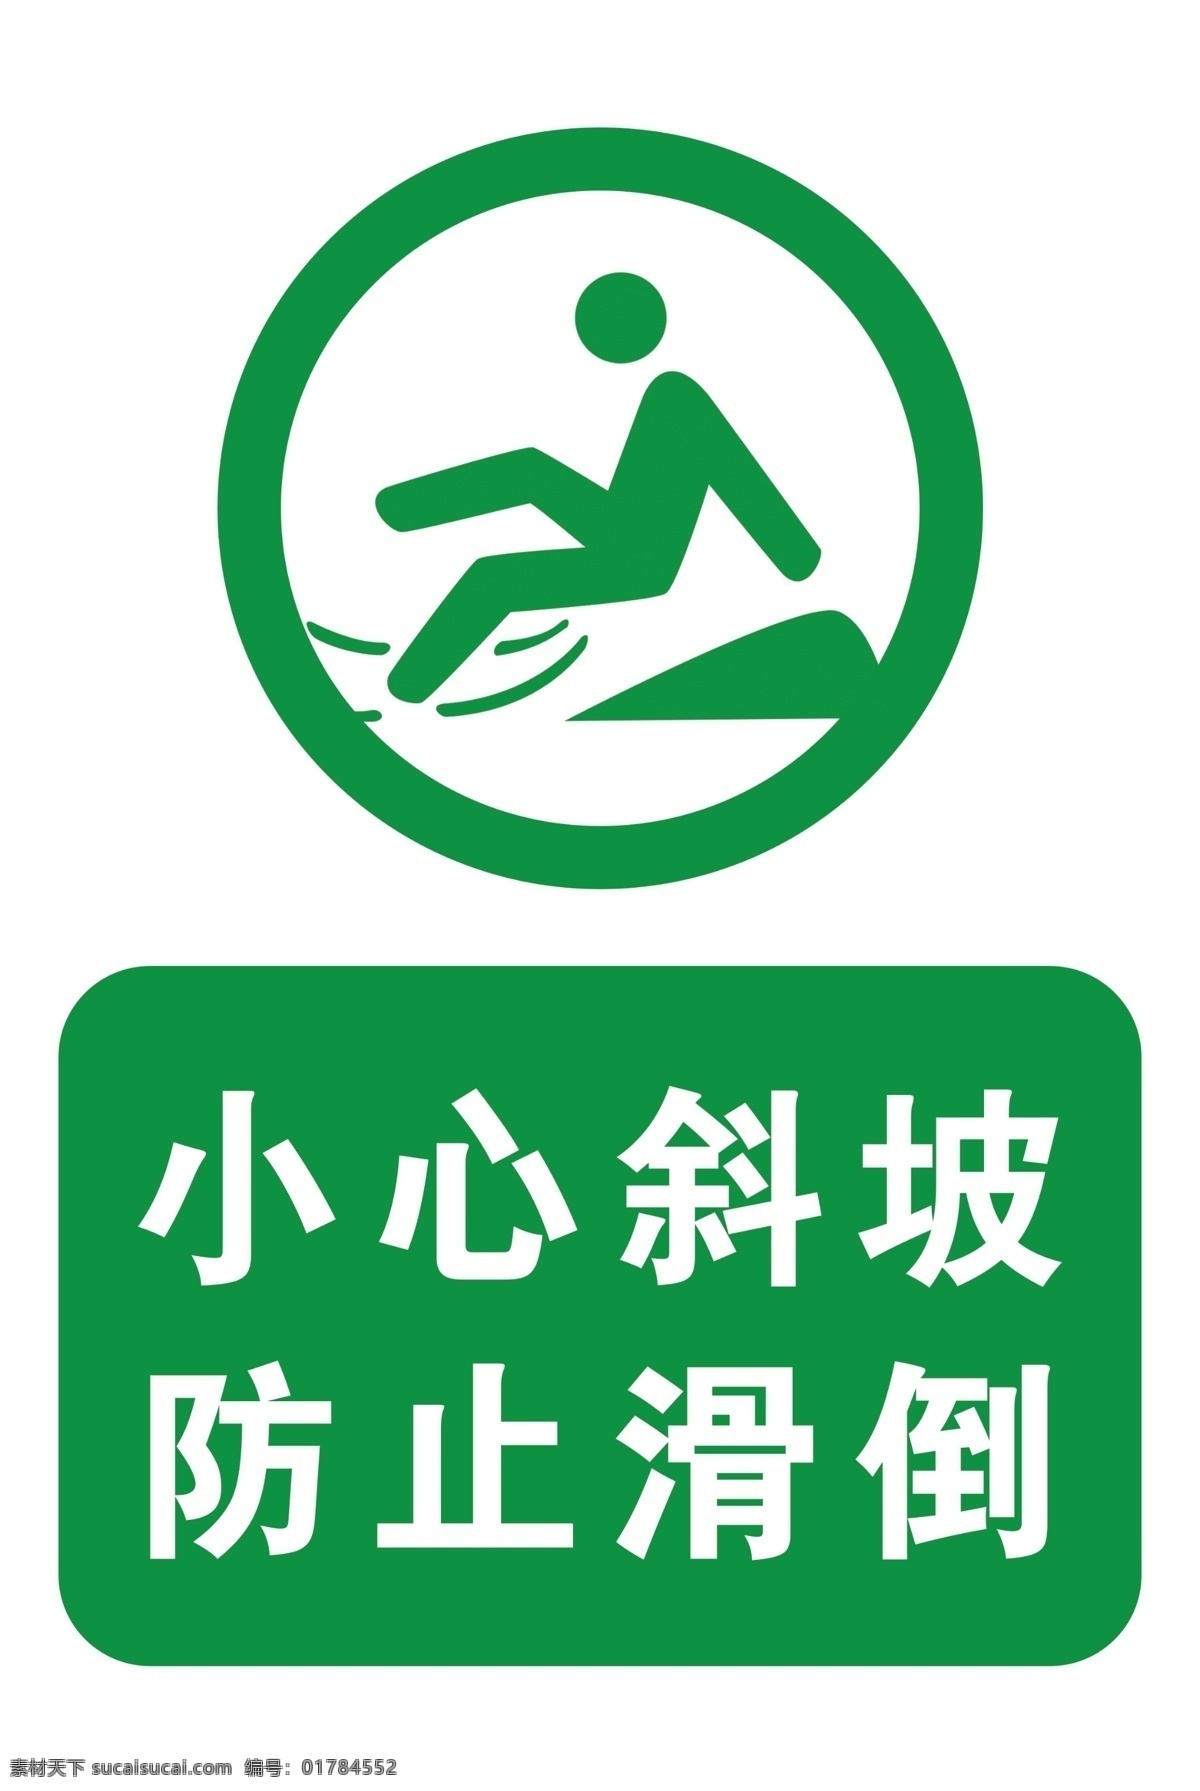 小心斜坡 防止滑倒图片 防止滑倒 滑倒 下坡 小心楼梯 标示 小心滑倒 小心脚下 小心 标志图标 公共标识标志